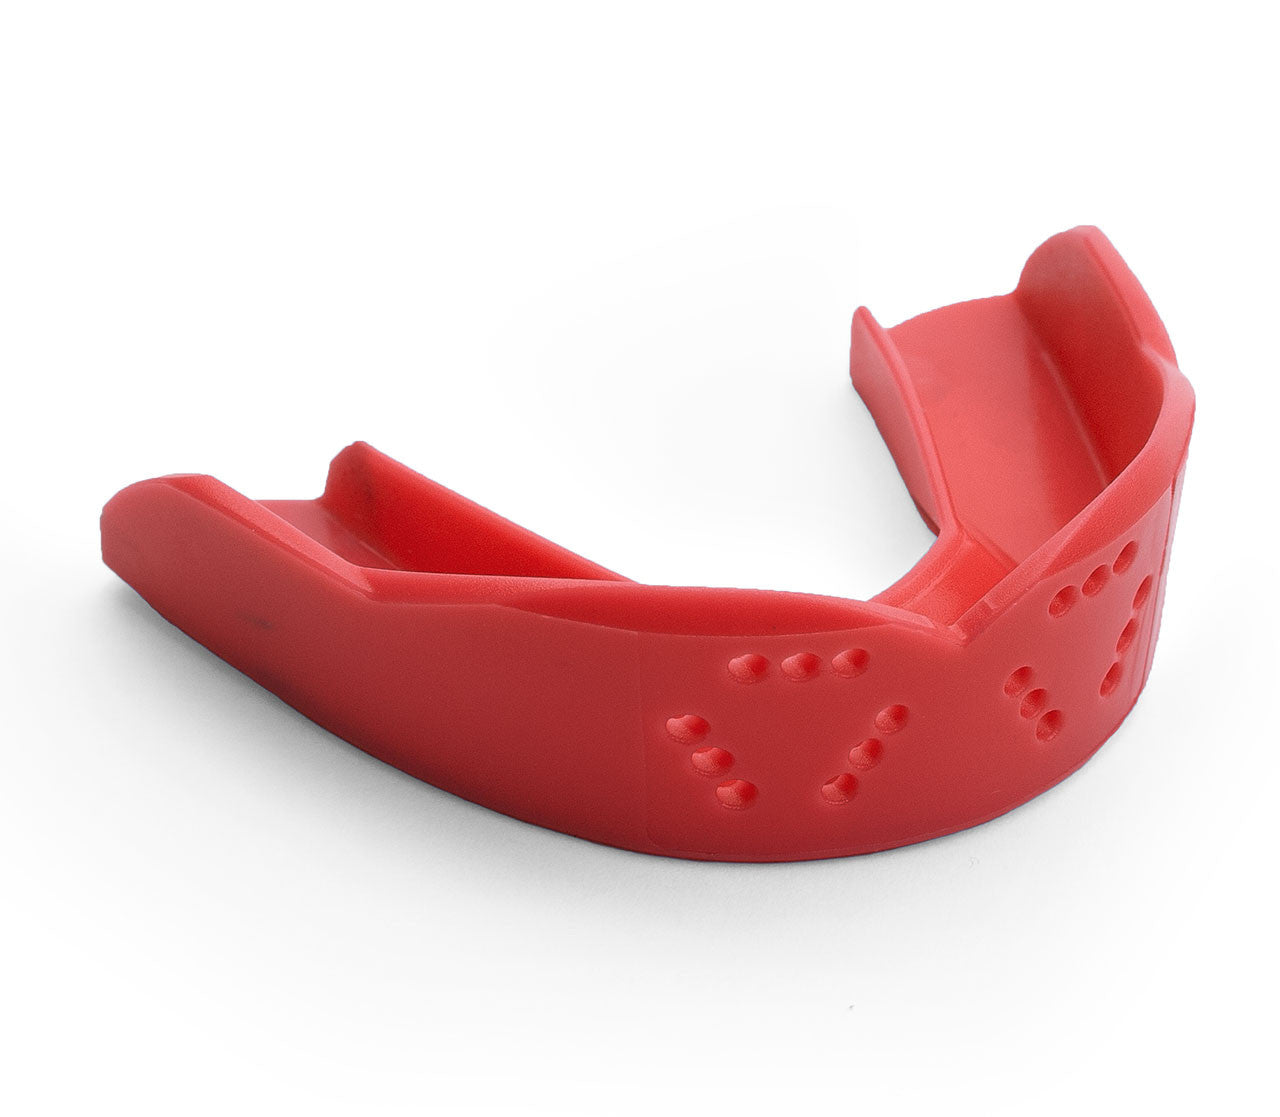 SISU 3D Mouthguard Equipment Sisu Red  